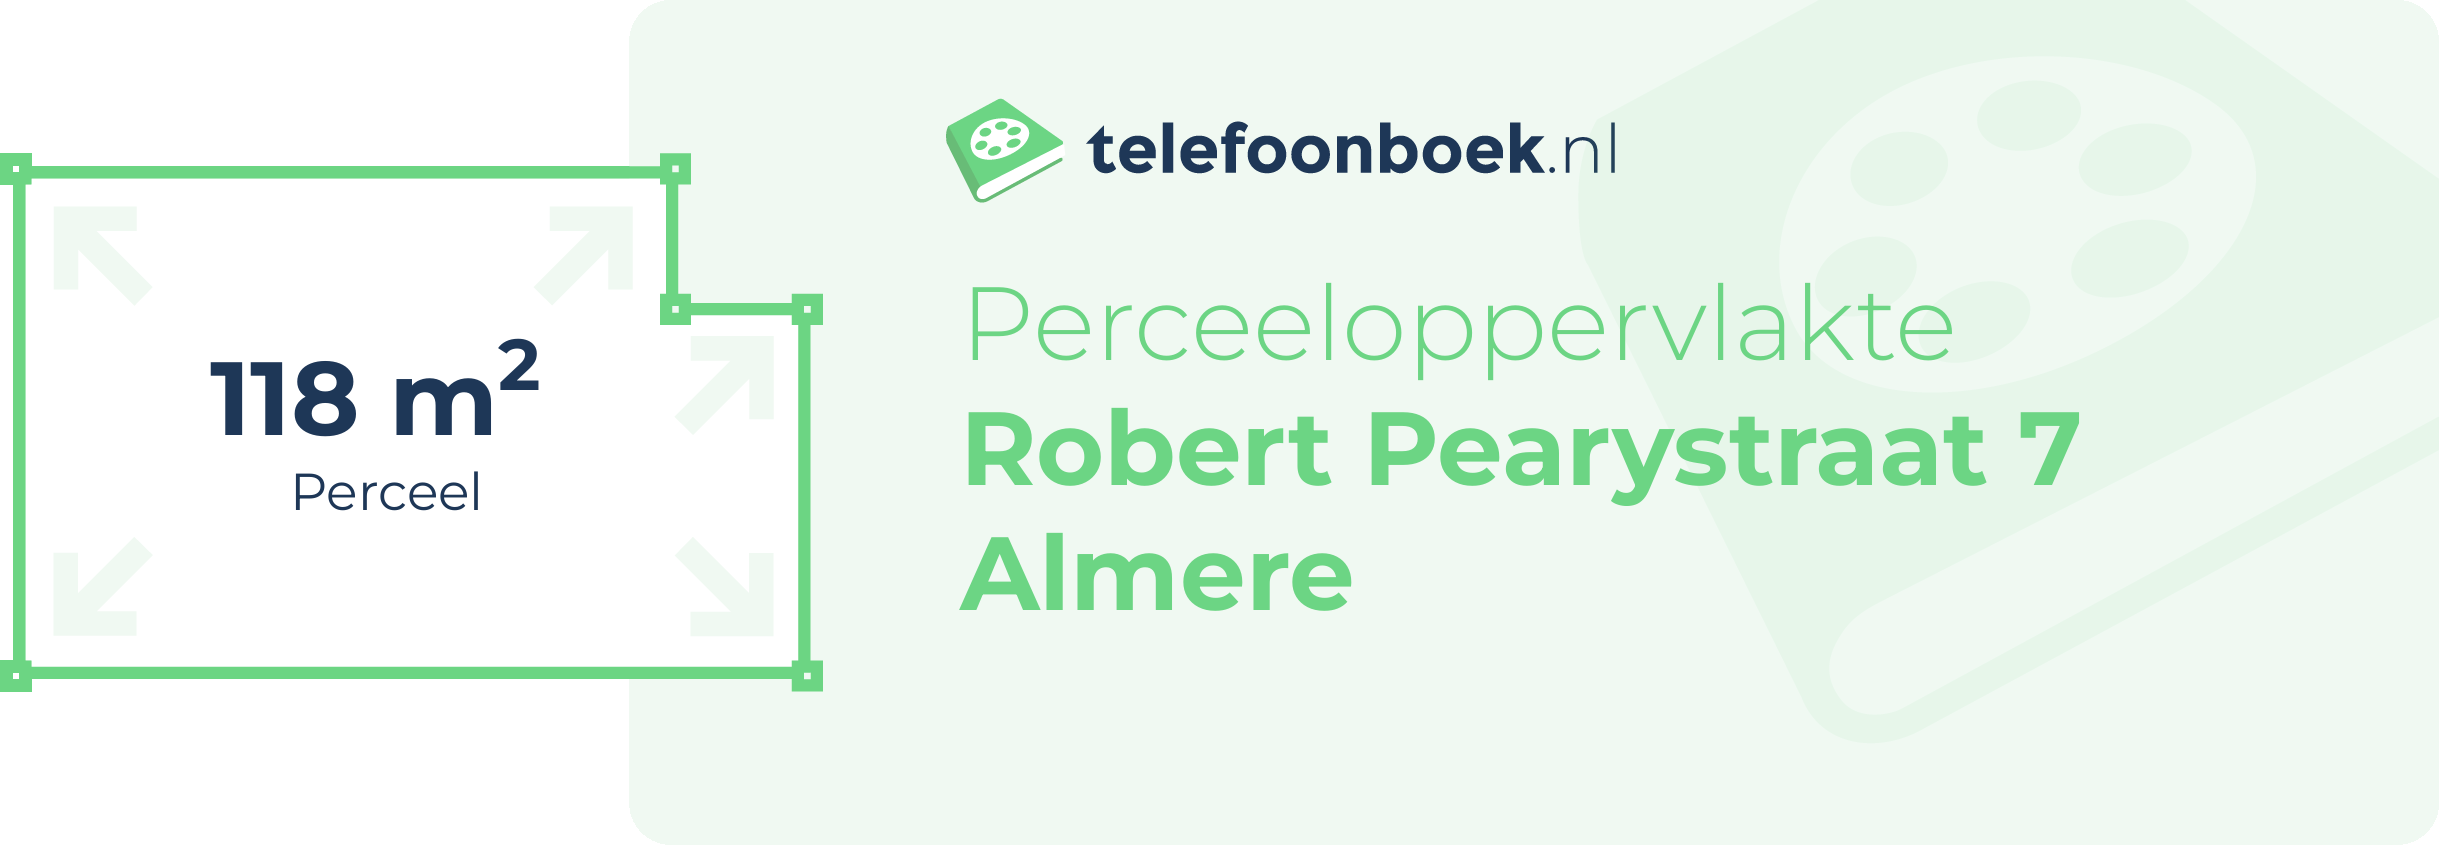 Perceeloppervlakte Robert Pearystraat 7 Almere